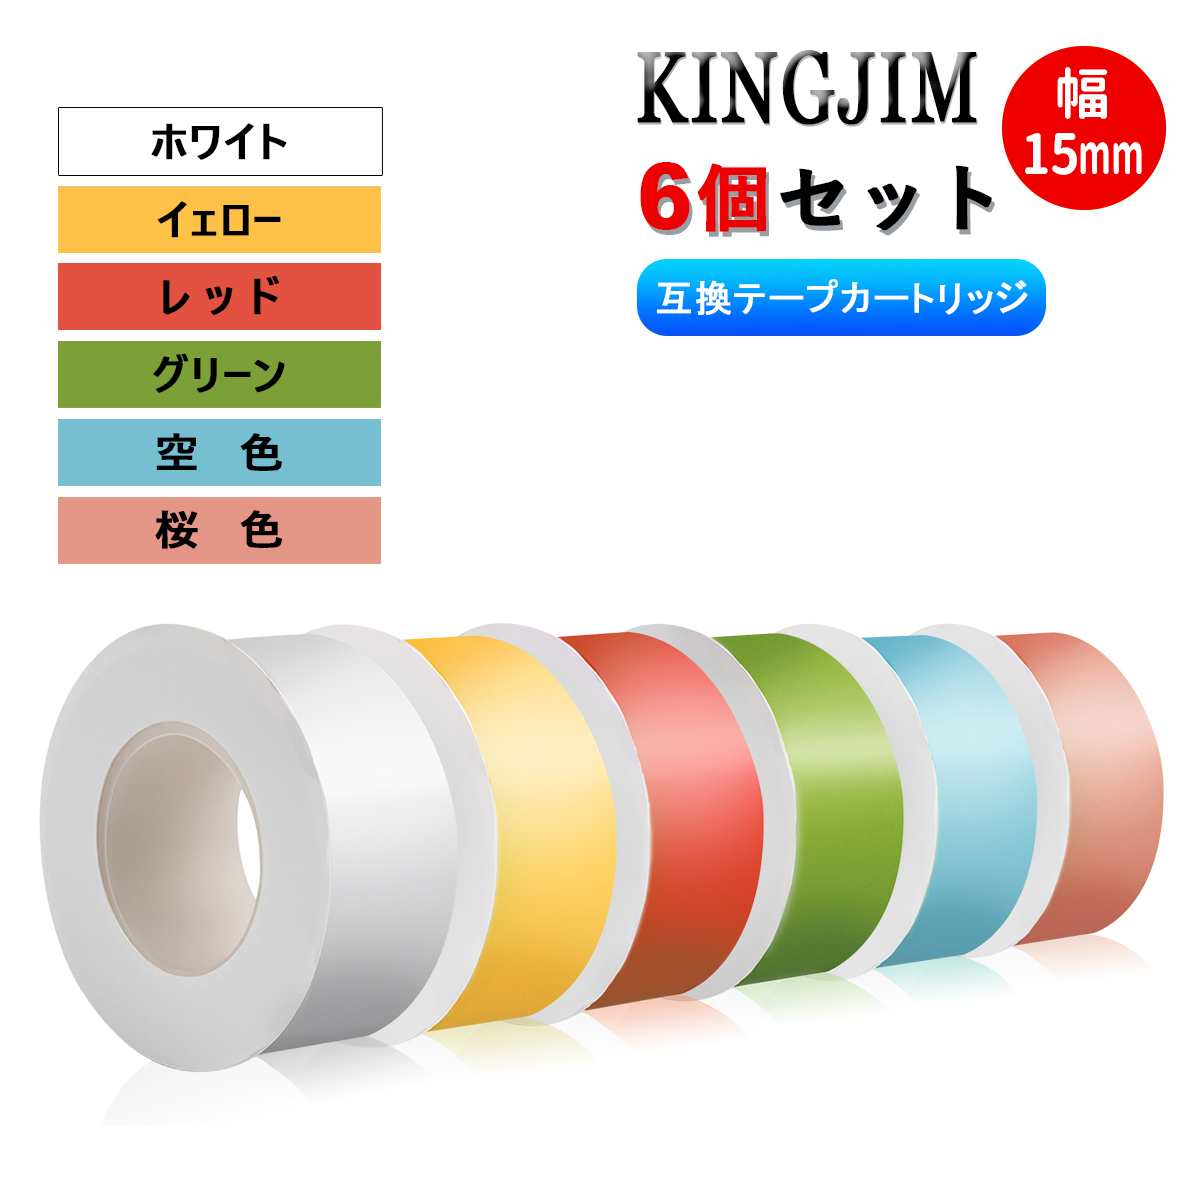 キングジム テプラLiteテープ 15mm幅 互換品 17色選択可・5個セット